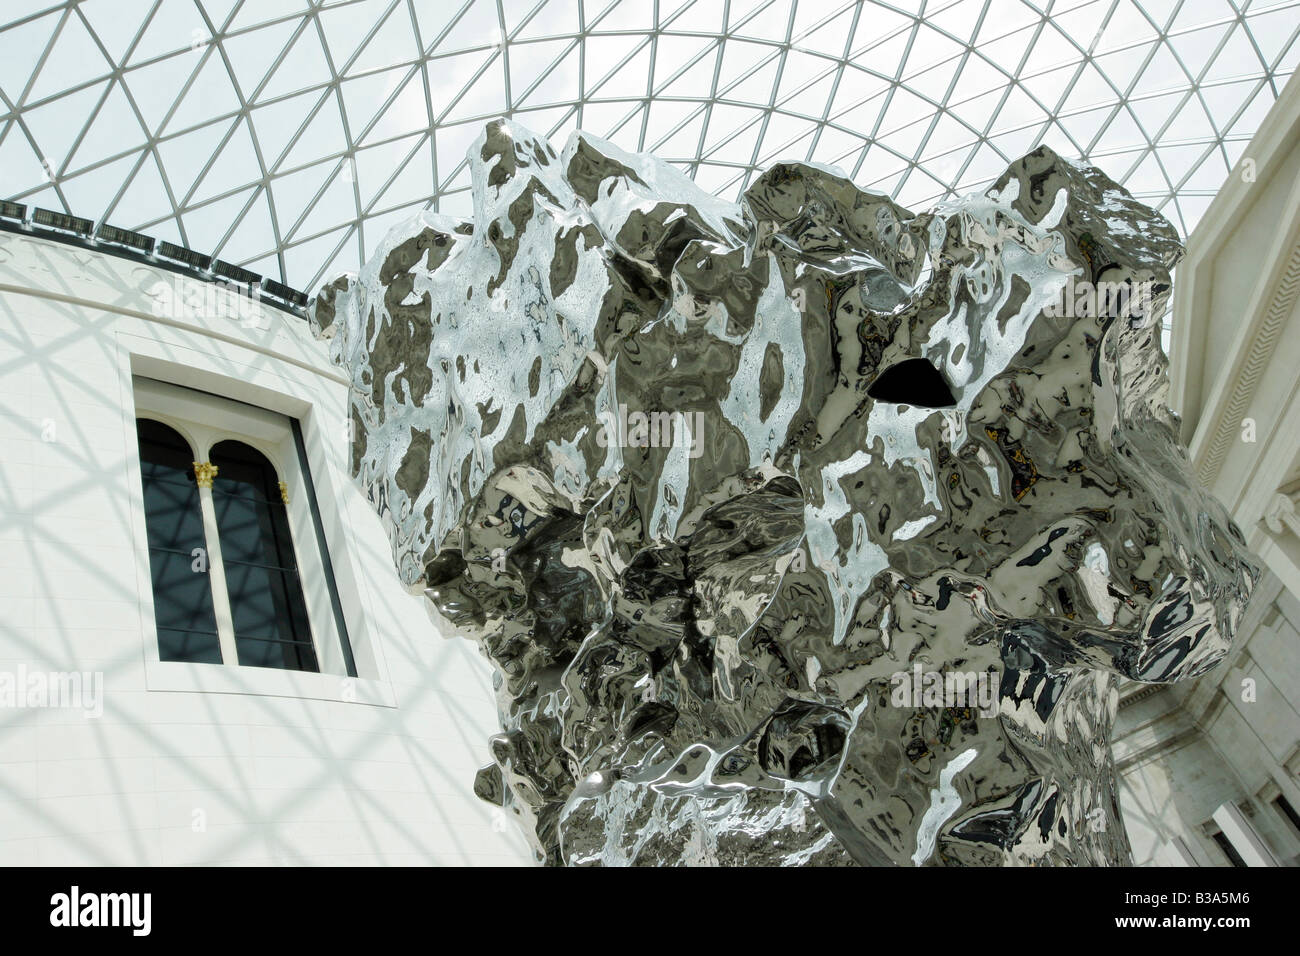 Numéro de Rock 59, sculpture de l'artiste chinois Zhan Wang dans la grande cour du British Museum à Londres Banque D'Images